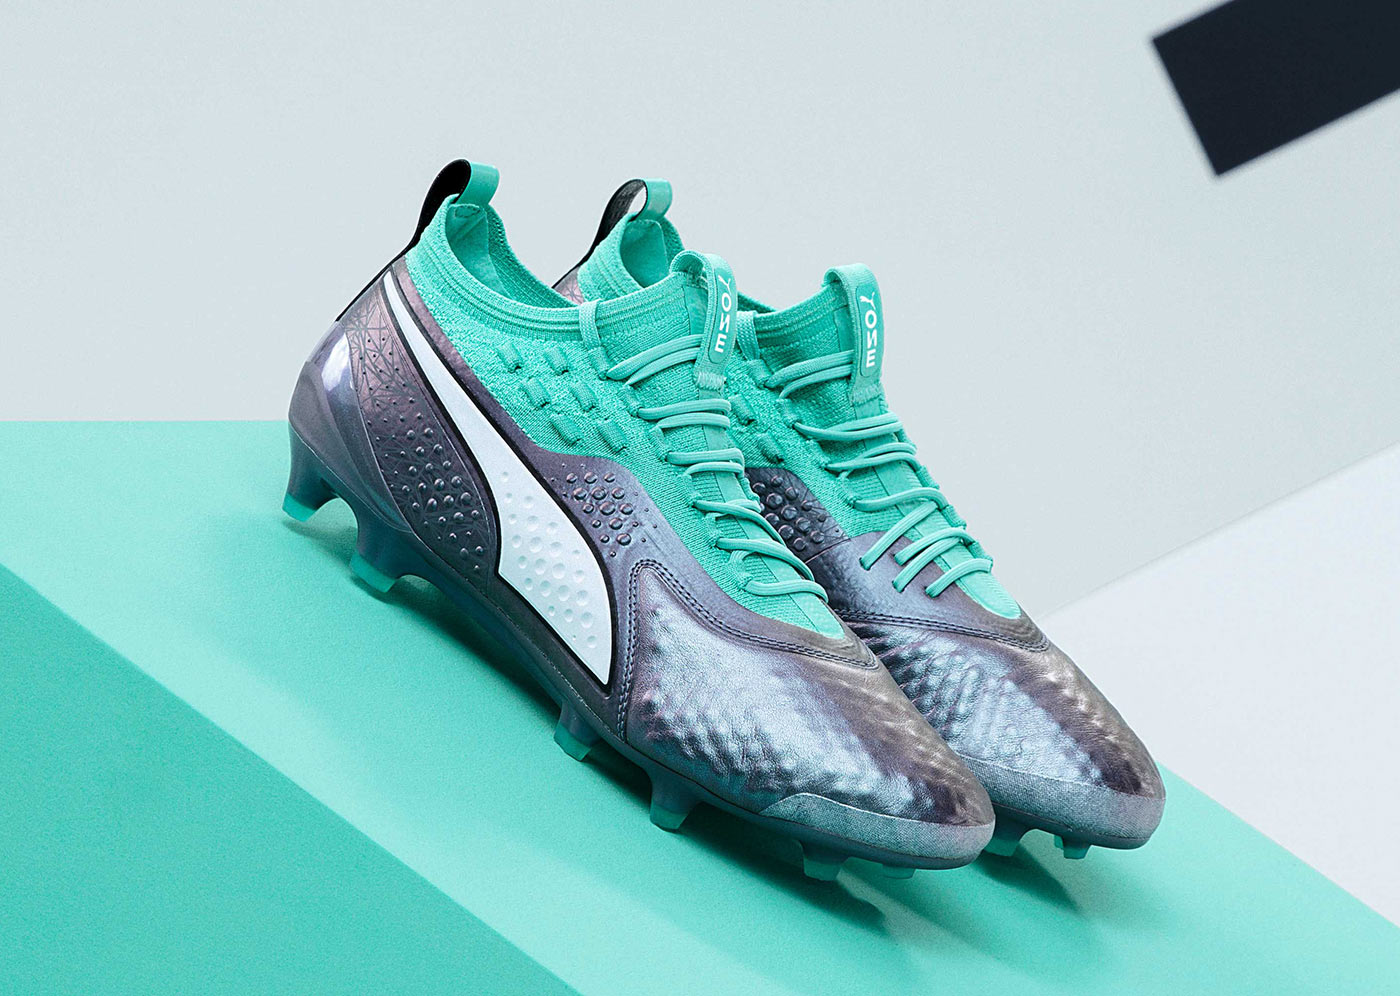 Le scarpe Puma One e Future per i Mondiali 2018 - Illuminate Pack